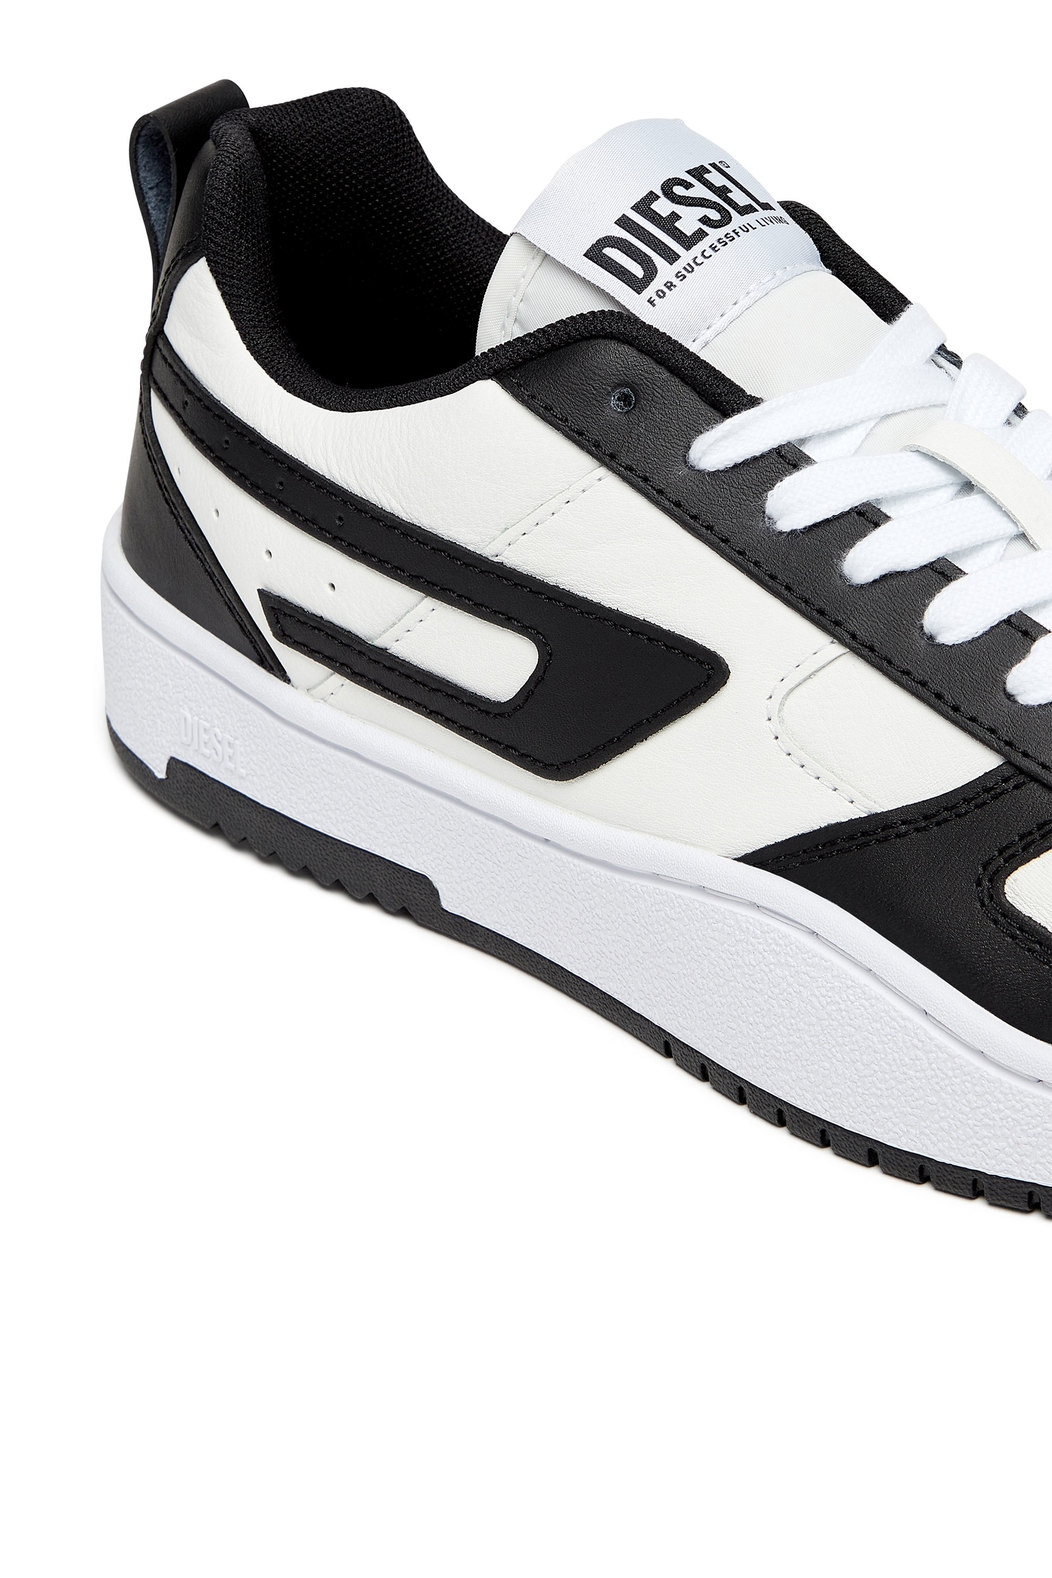 S-Ukiyo V2 Low - Low-top sneakers with D branding